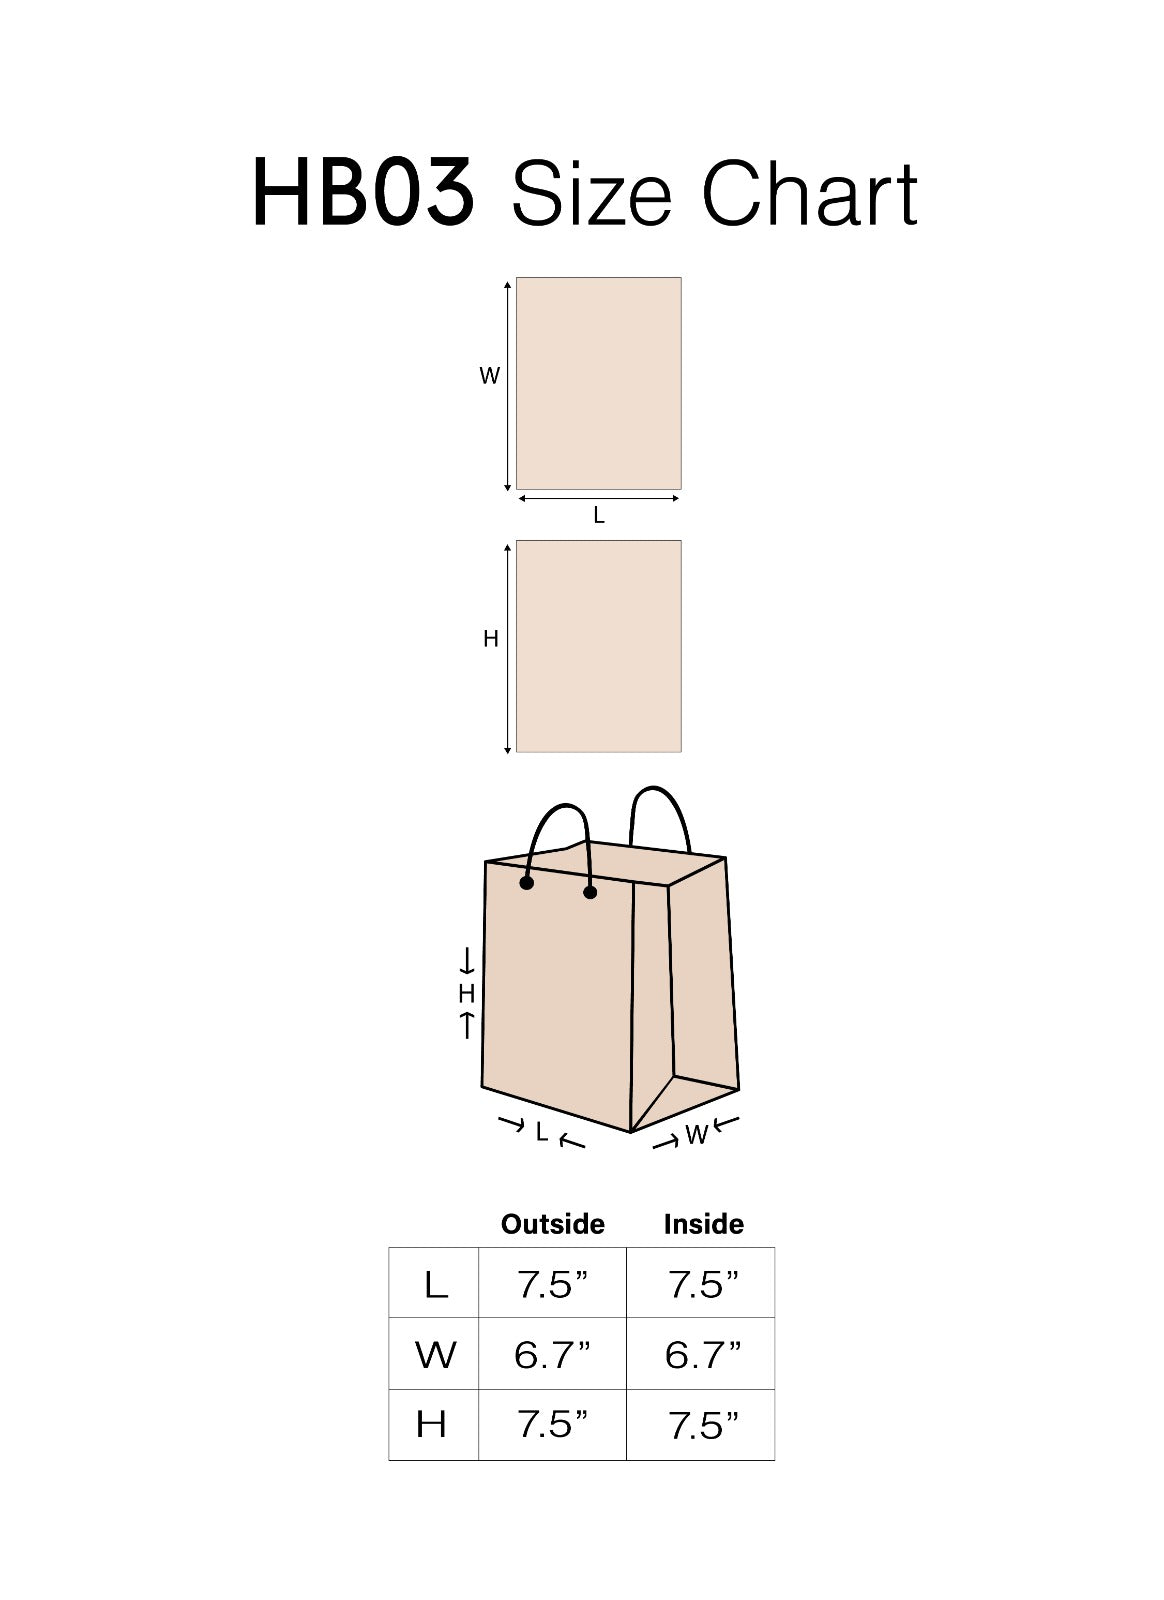 Craft Paper Bag Lines Pattern - Craft Bag - Golden Silver Red - 7x5 Paper Bag